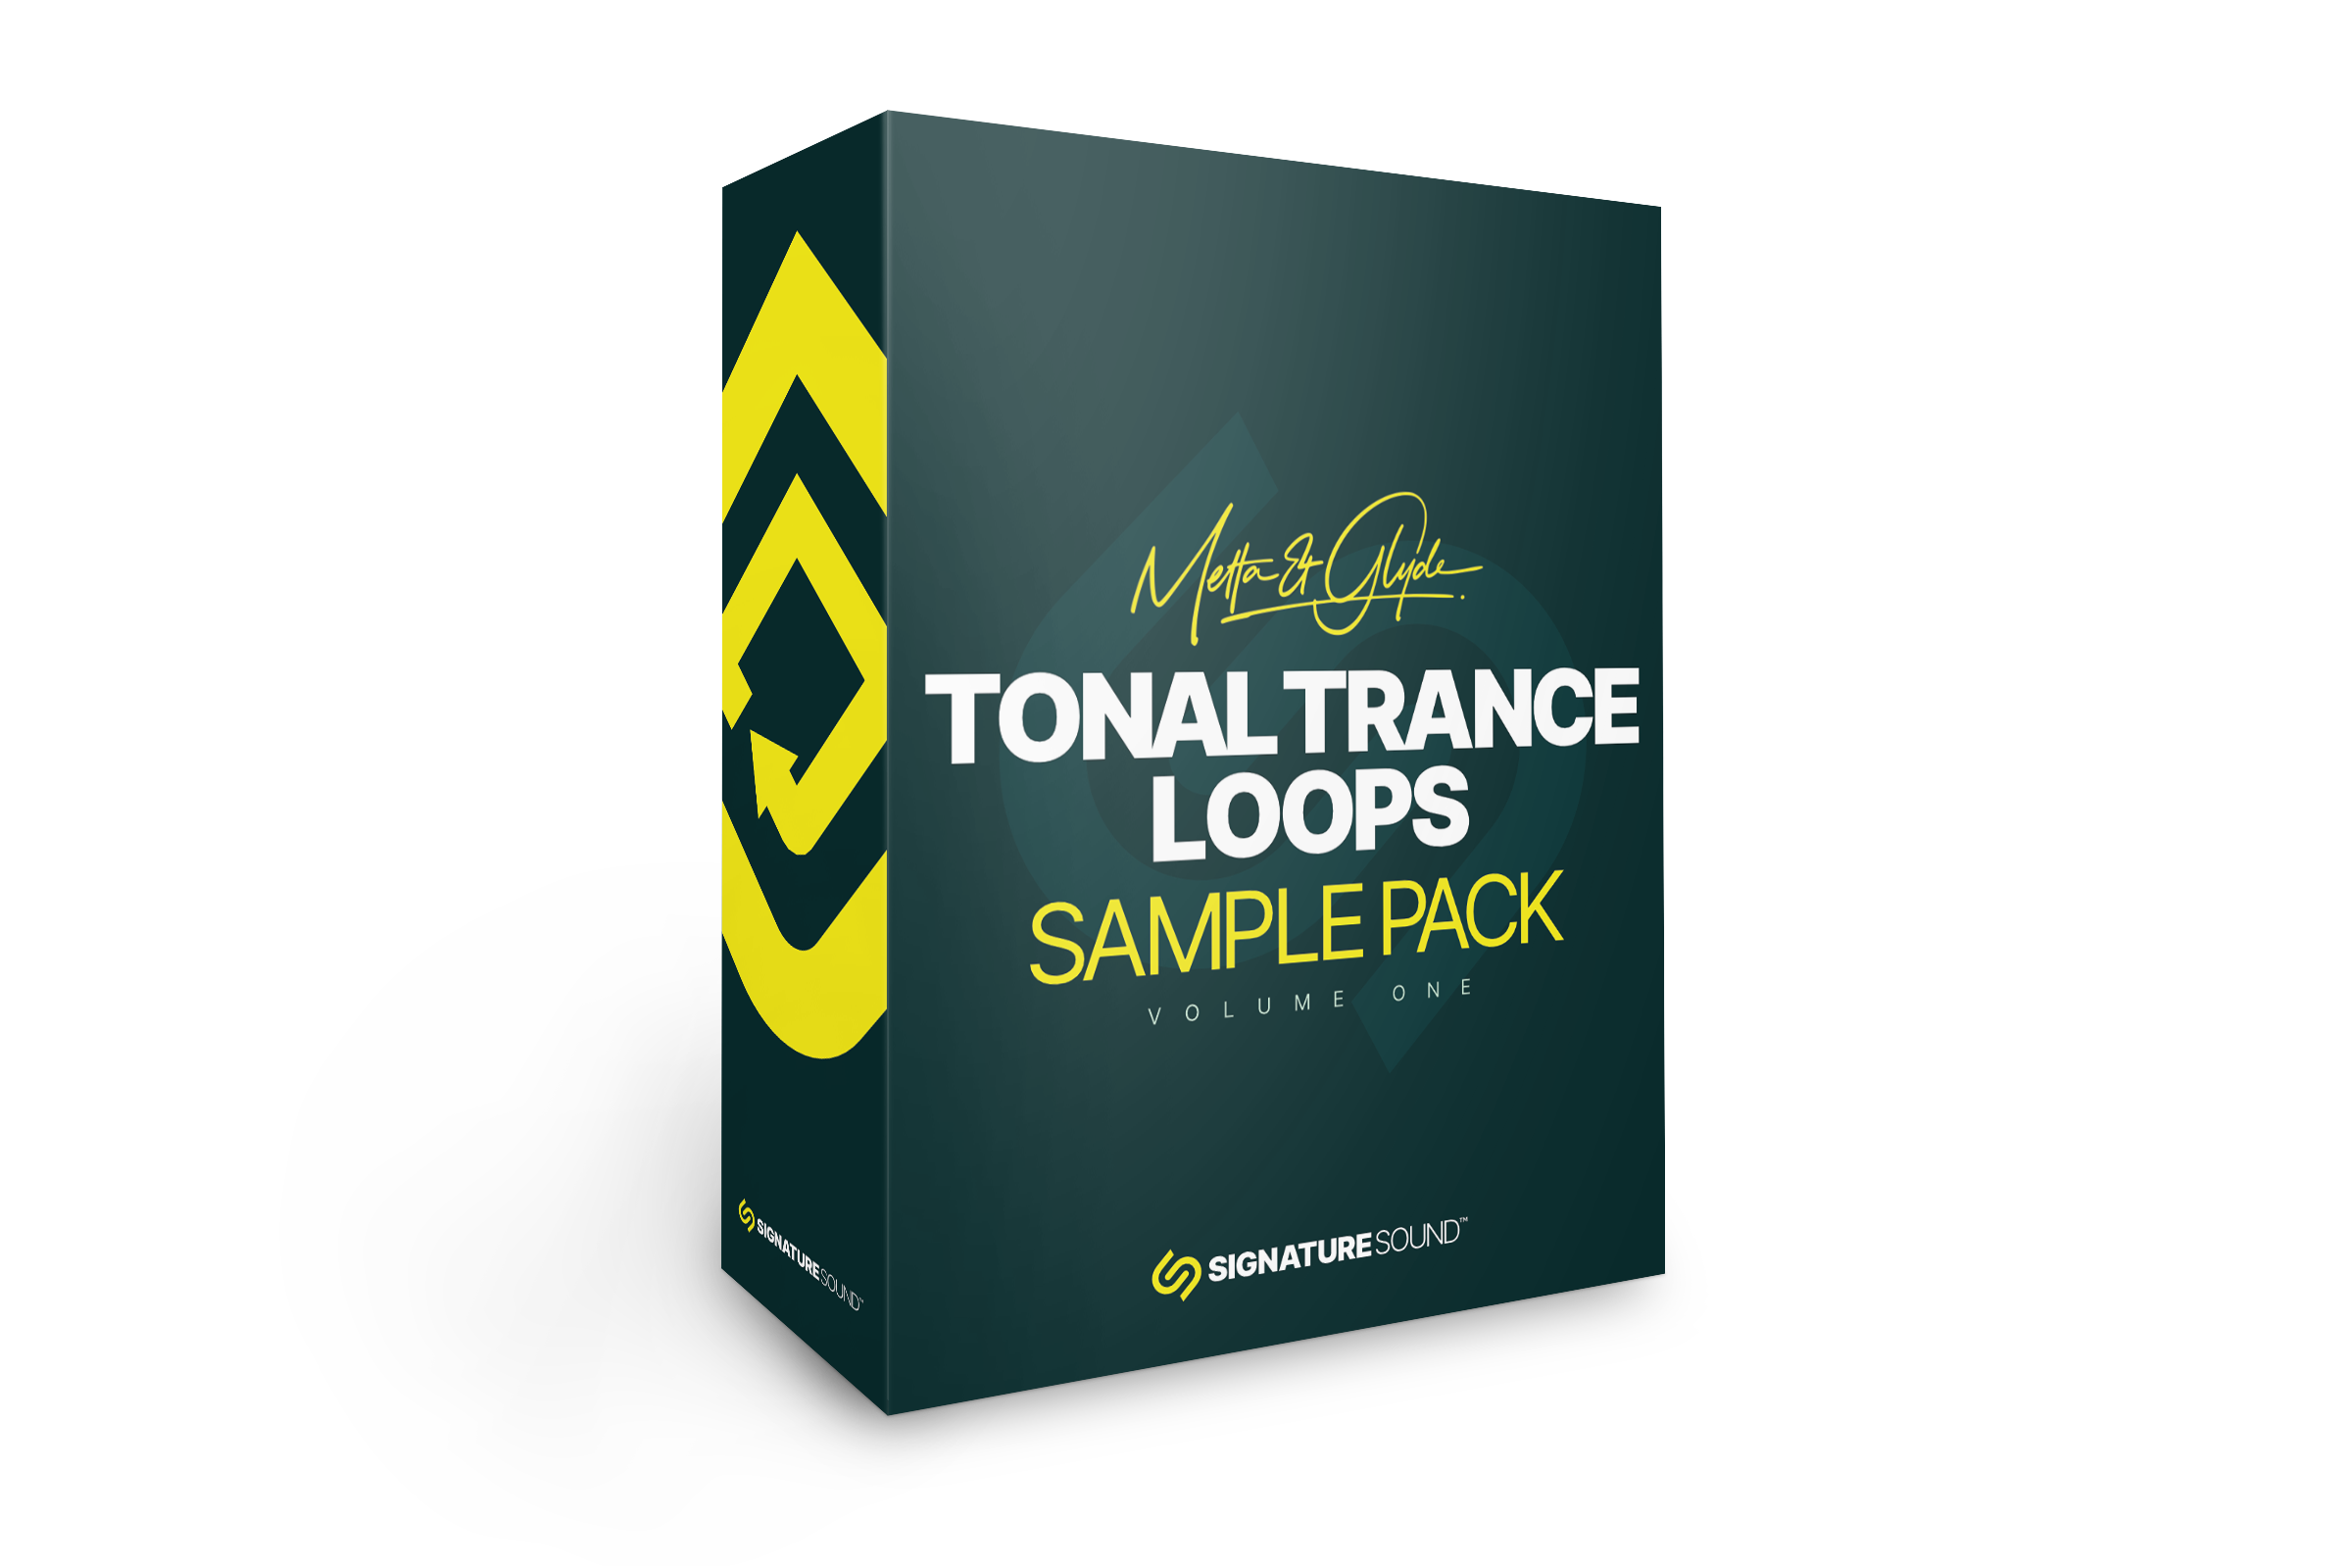 Metta & Glyde Tonal Trance Loops [Sample Pack] Volume One